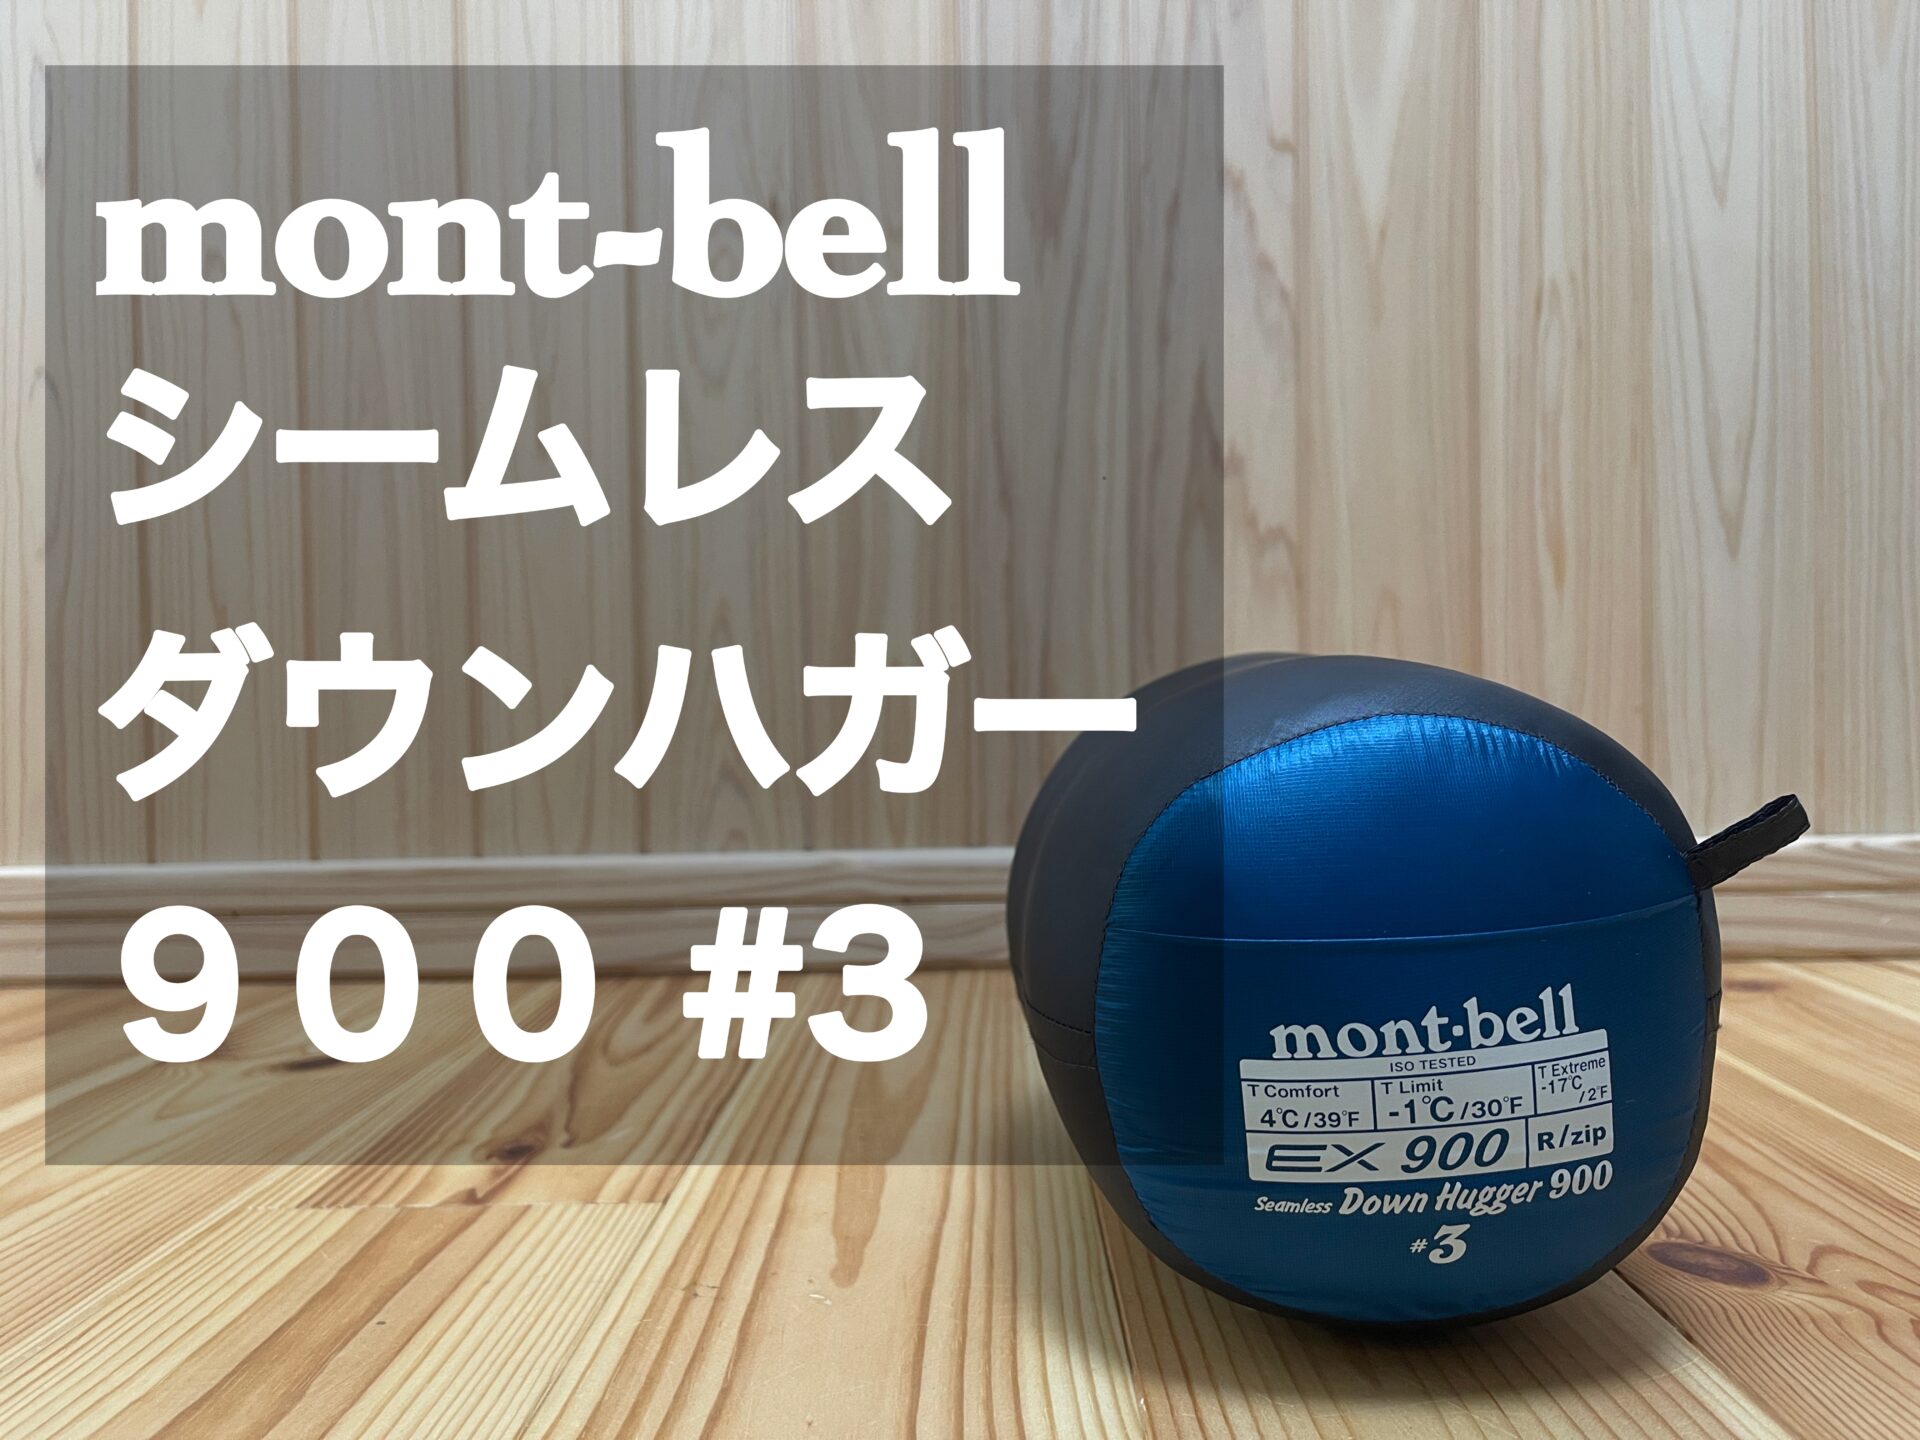 mont-bell 【シームレスダウンハガー900#3】レビュー | patashinblog